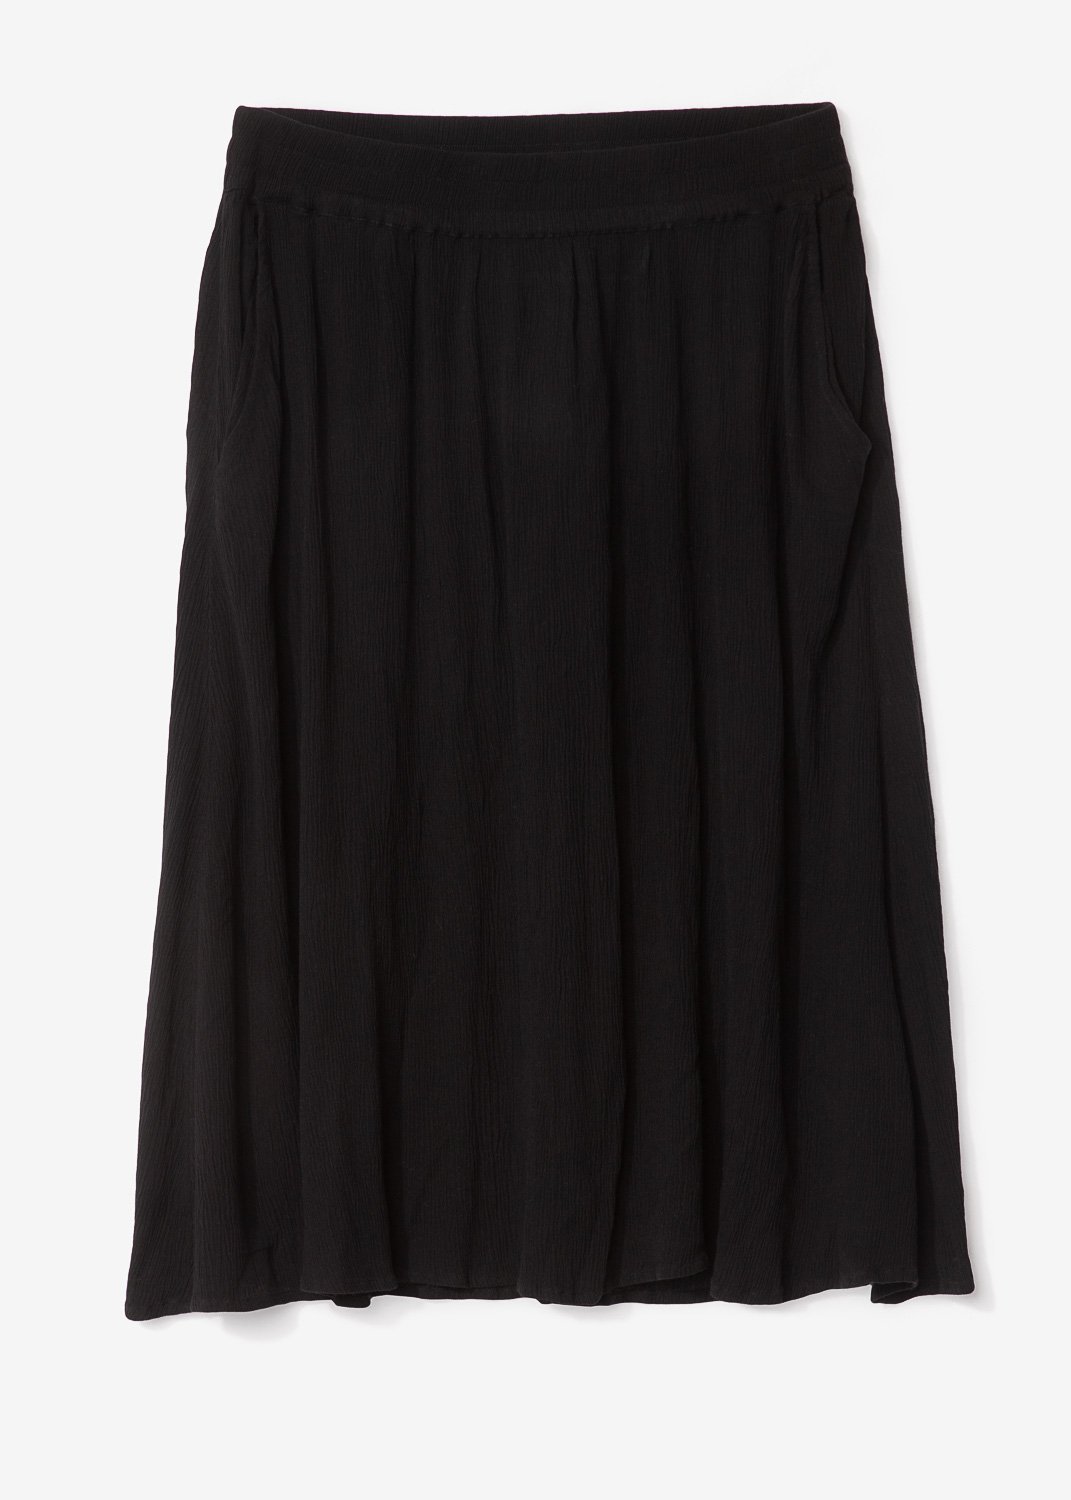 Black crinkle skirt